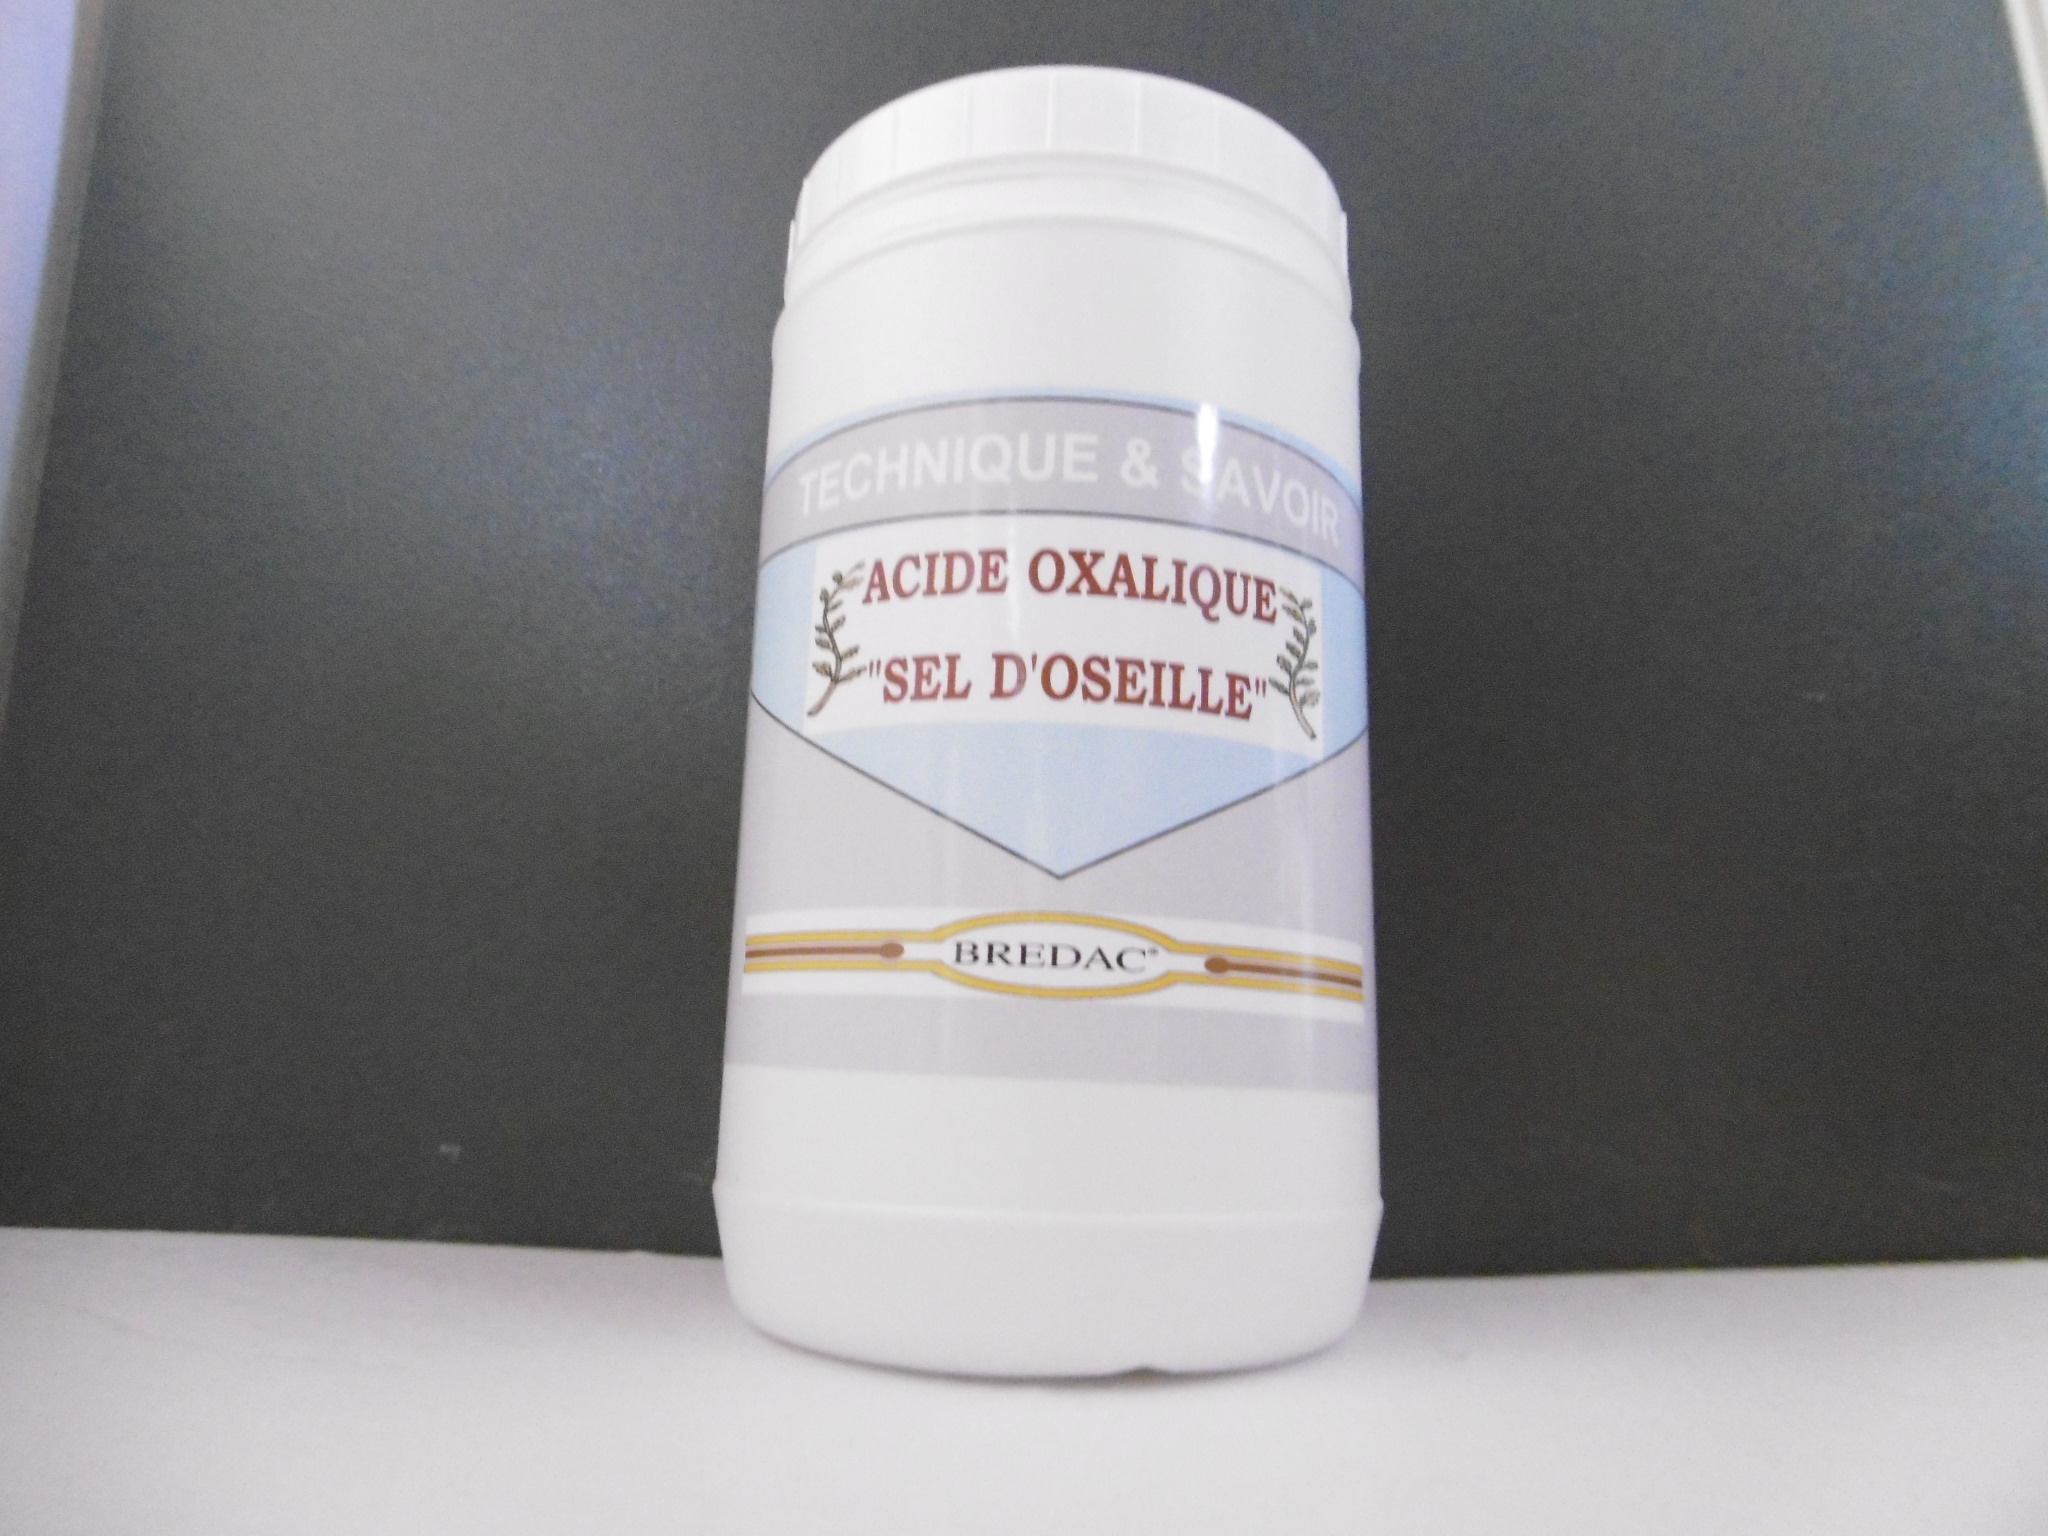 Acide oxalique dit “Sel d'Oseille” - Fluidemail Empreinte Spécialités